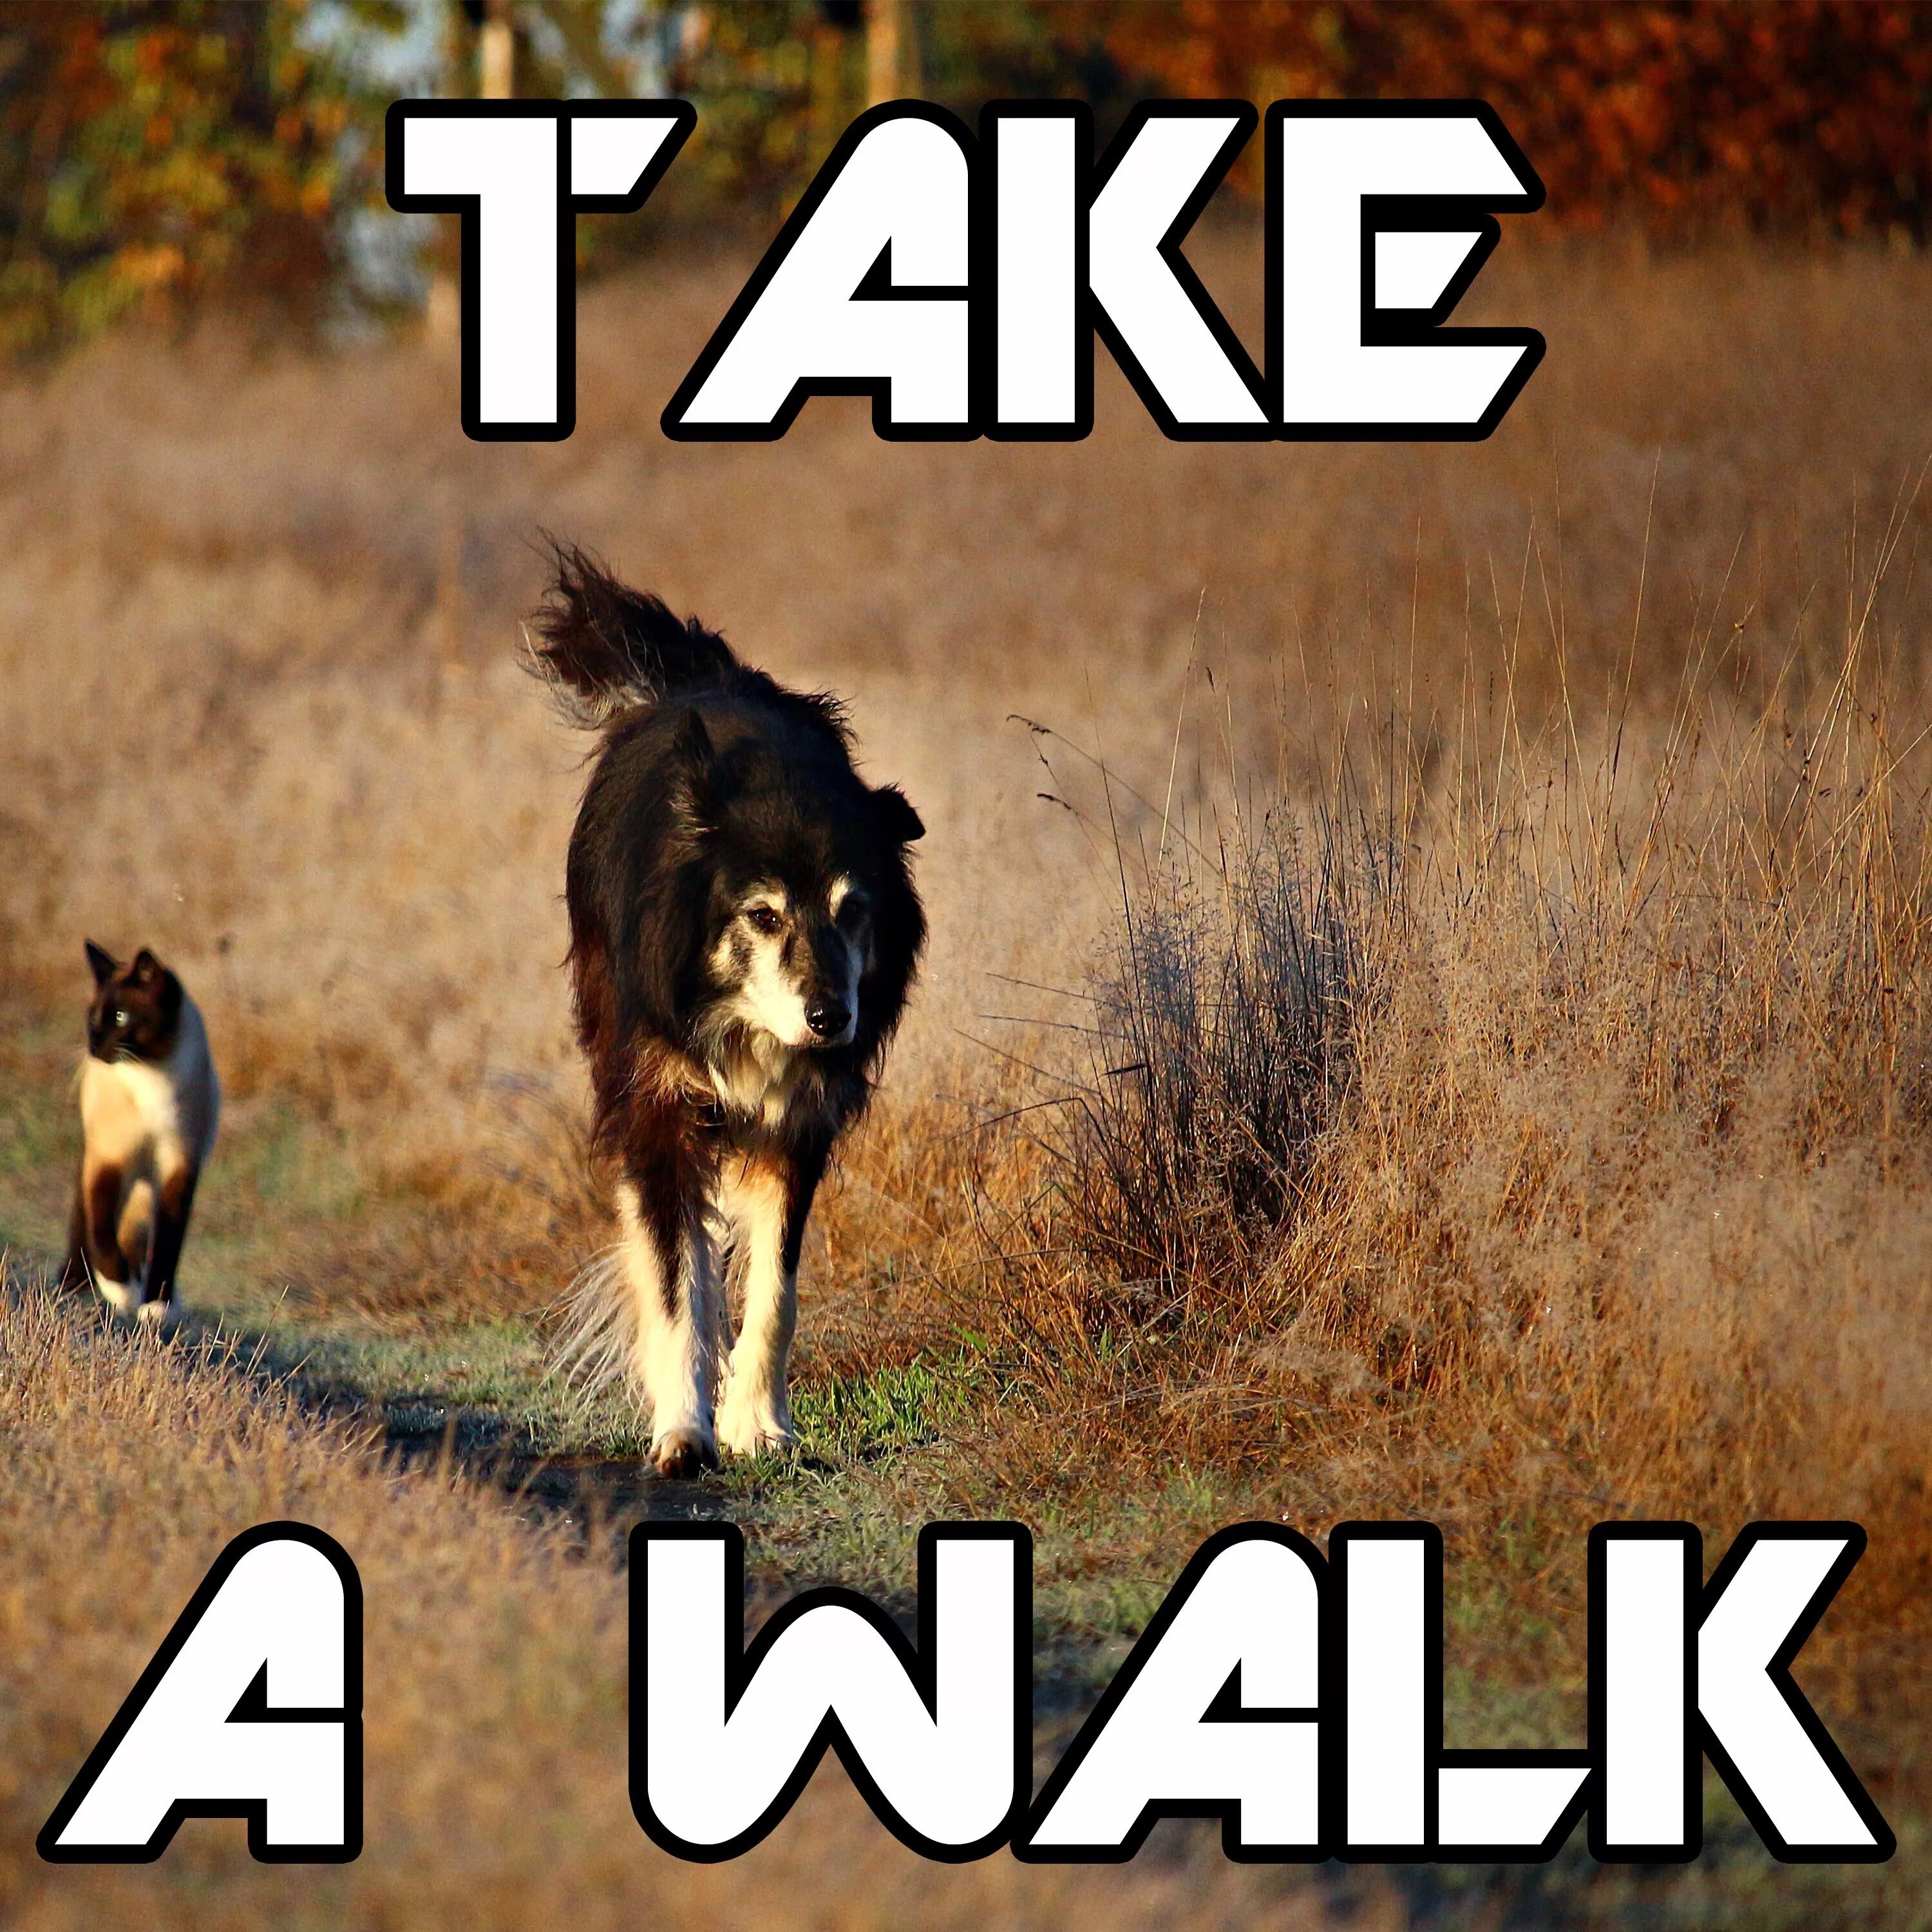 You can take a walk. Take a walk. Taking a walk. Картинки can we take a walk. I took walk.